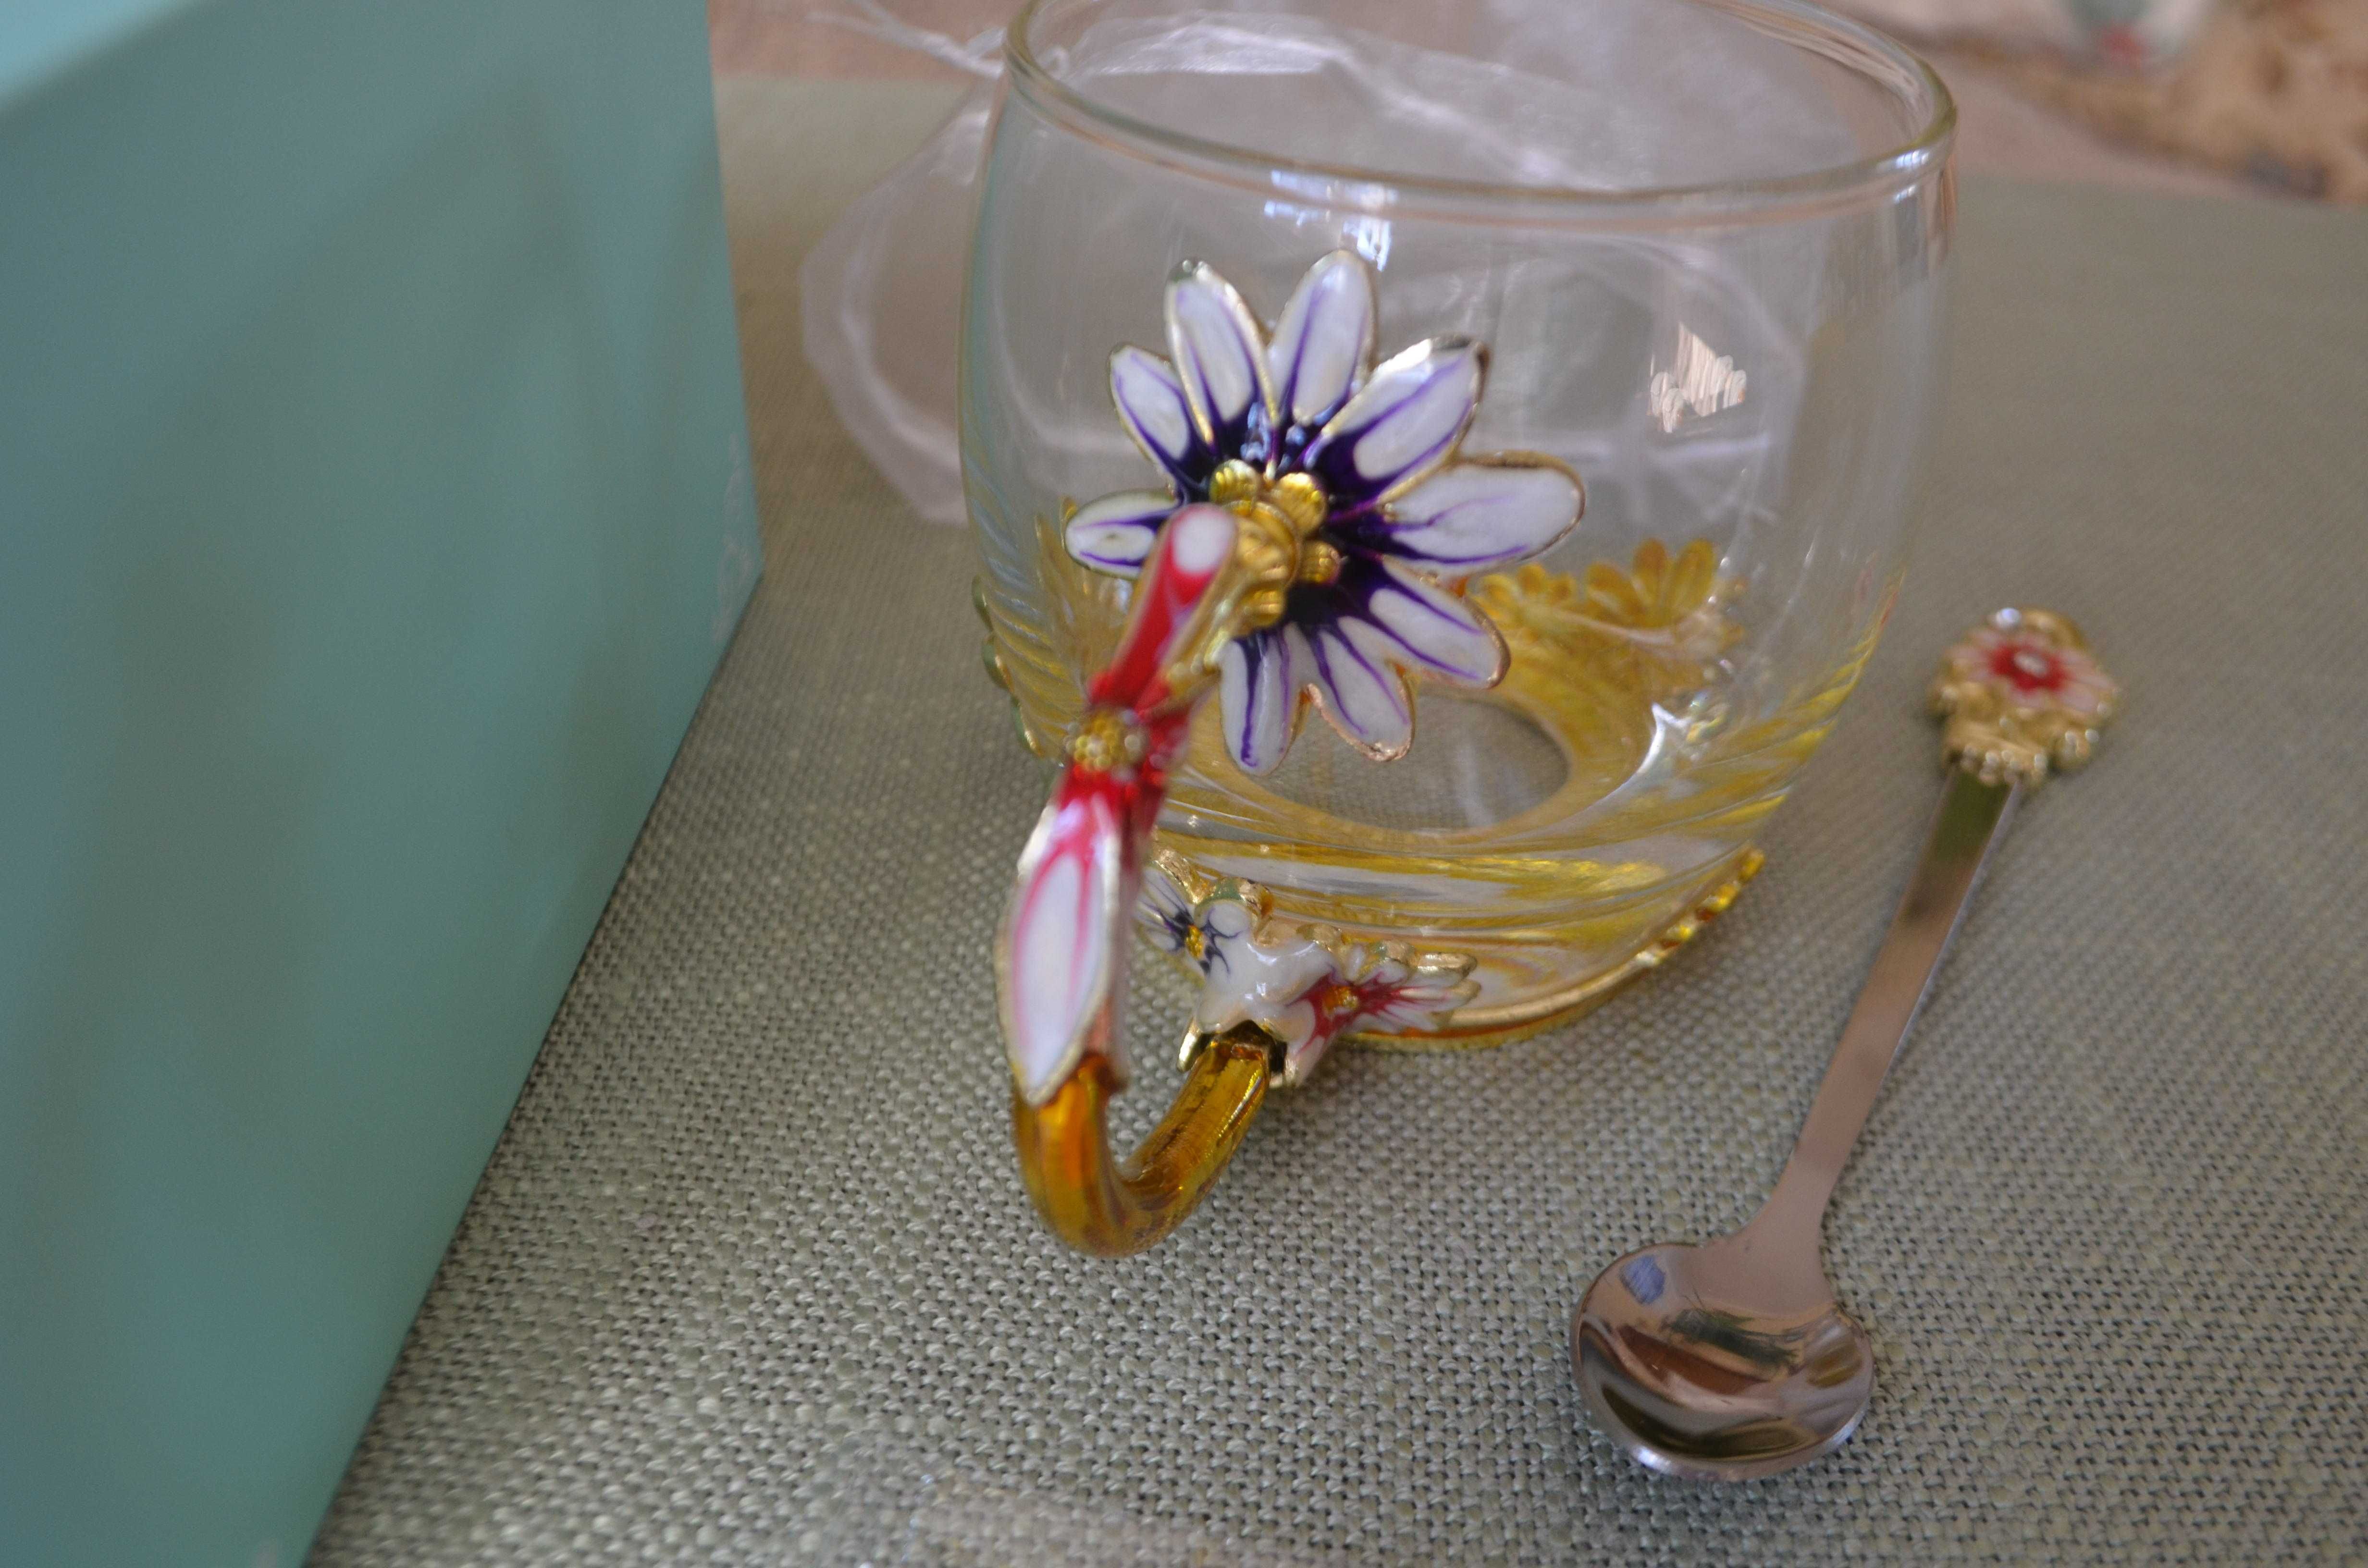 szklanka filiżanka emaliowana Flower Tea Cup seria limitowana